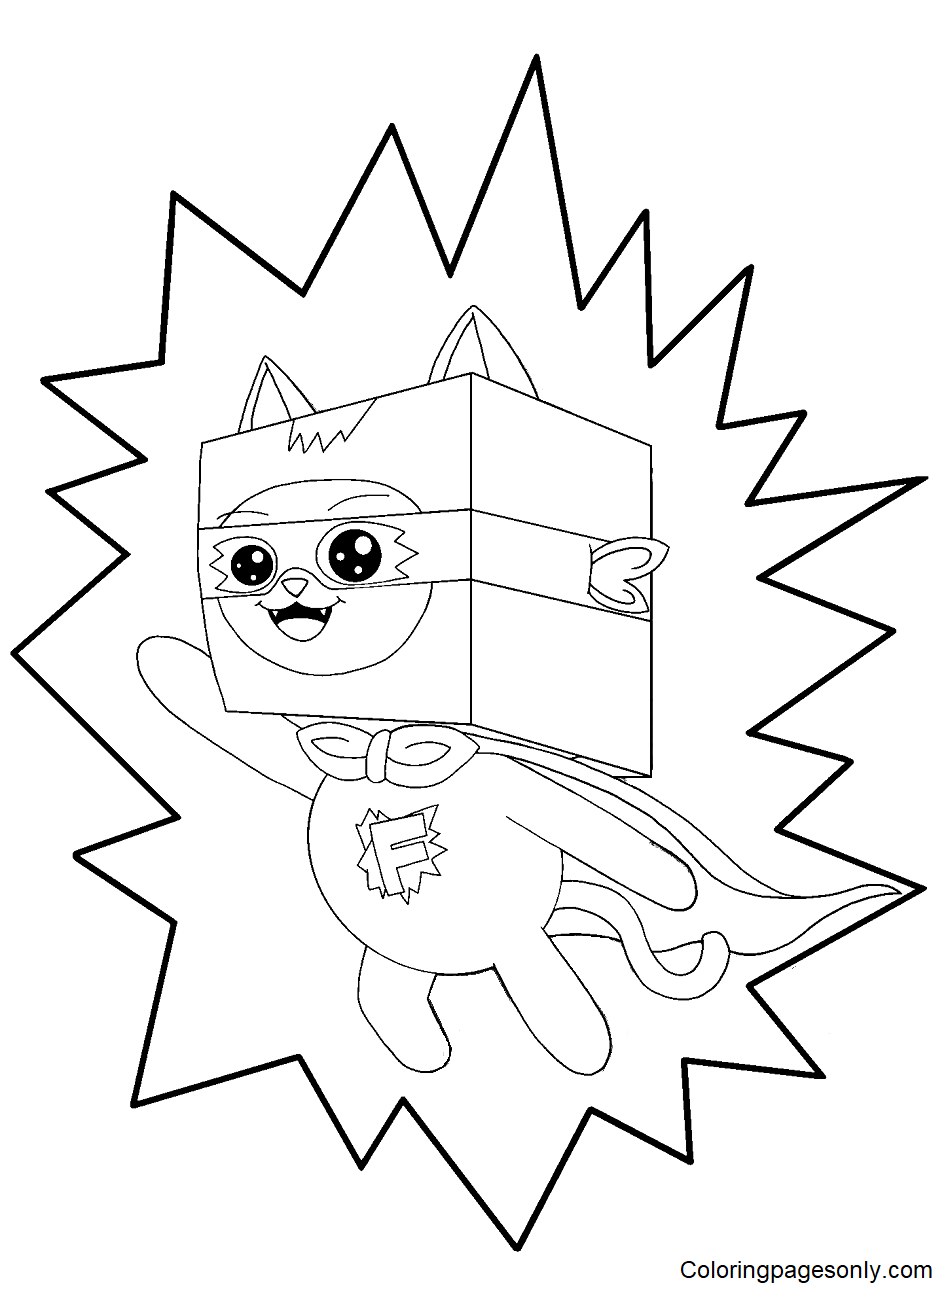 LankyBox 的 Super Foxy